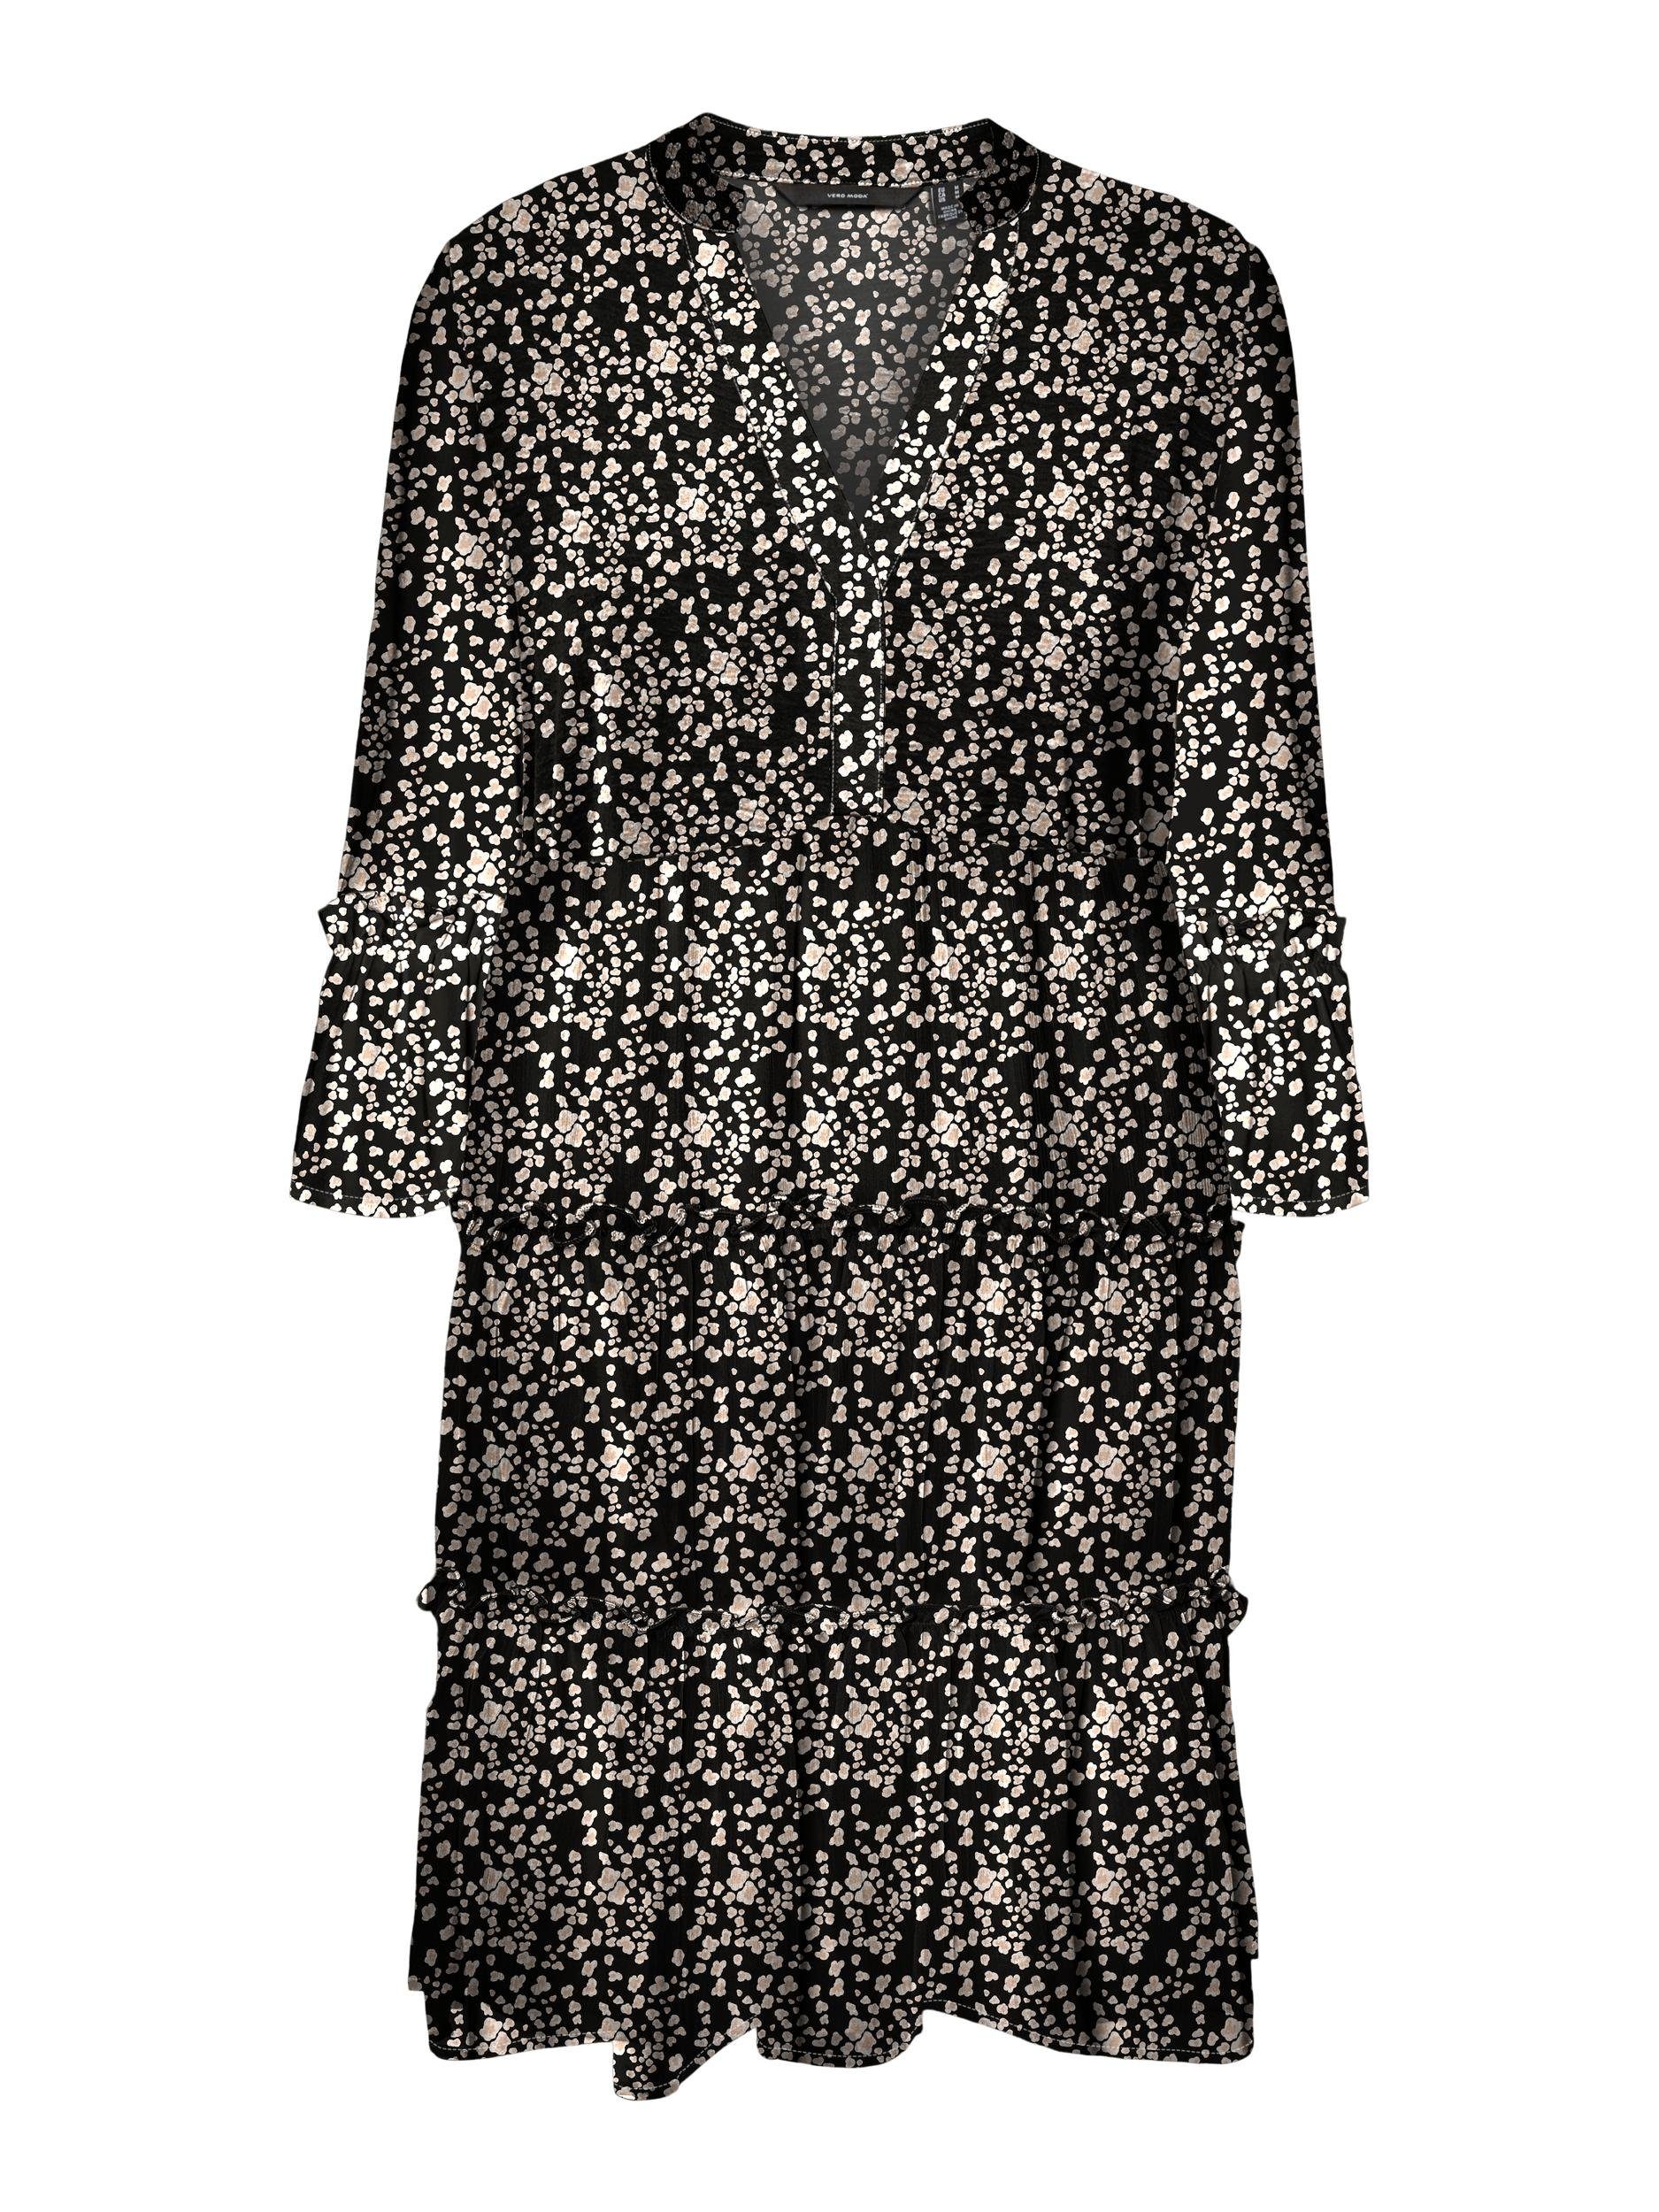 Vero GA R1 3/4 WVN DRESS Moda AOP:Nora Black Rüschen SHORT Minikleid mit VMEASY